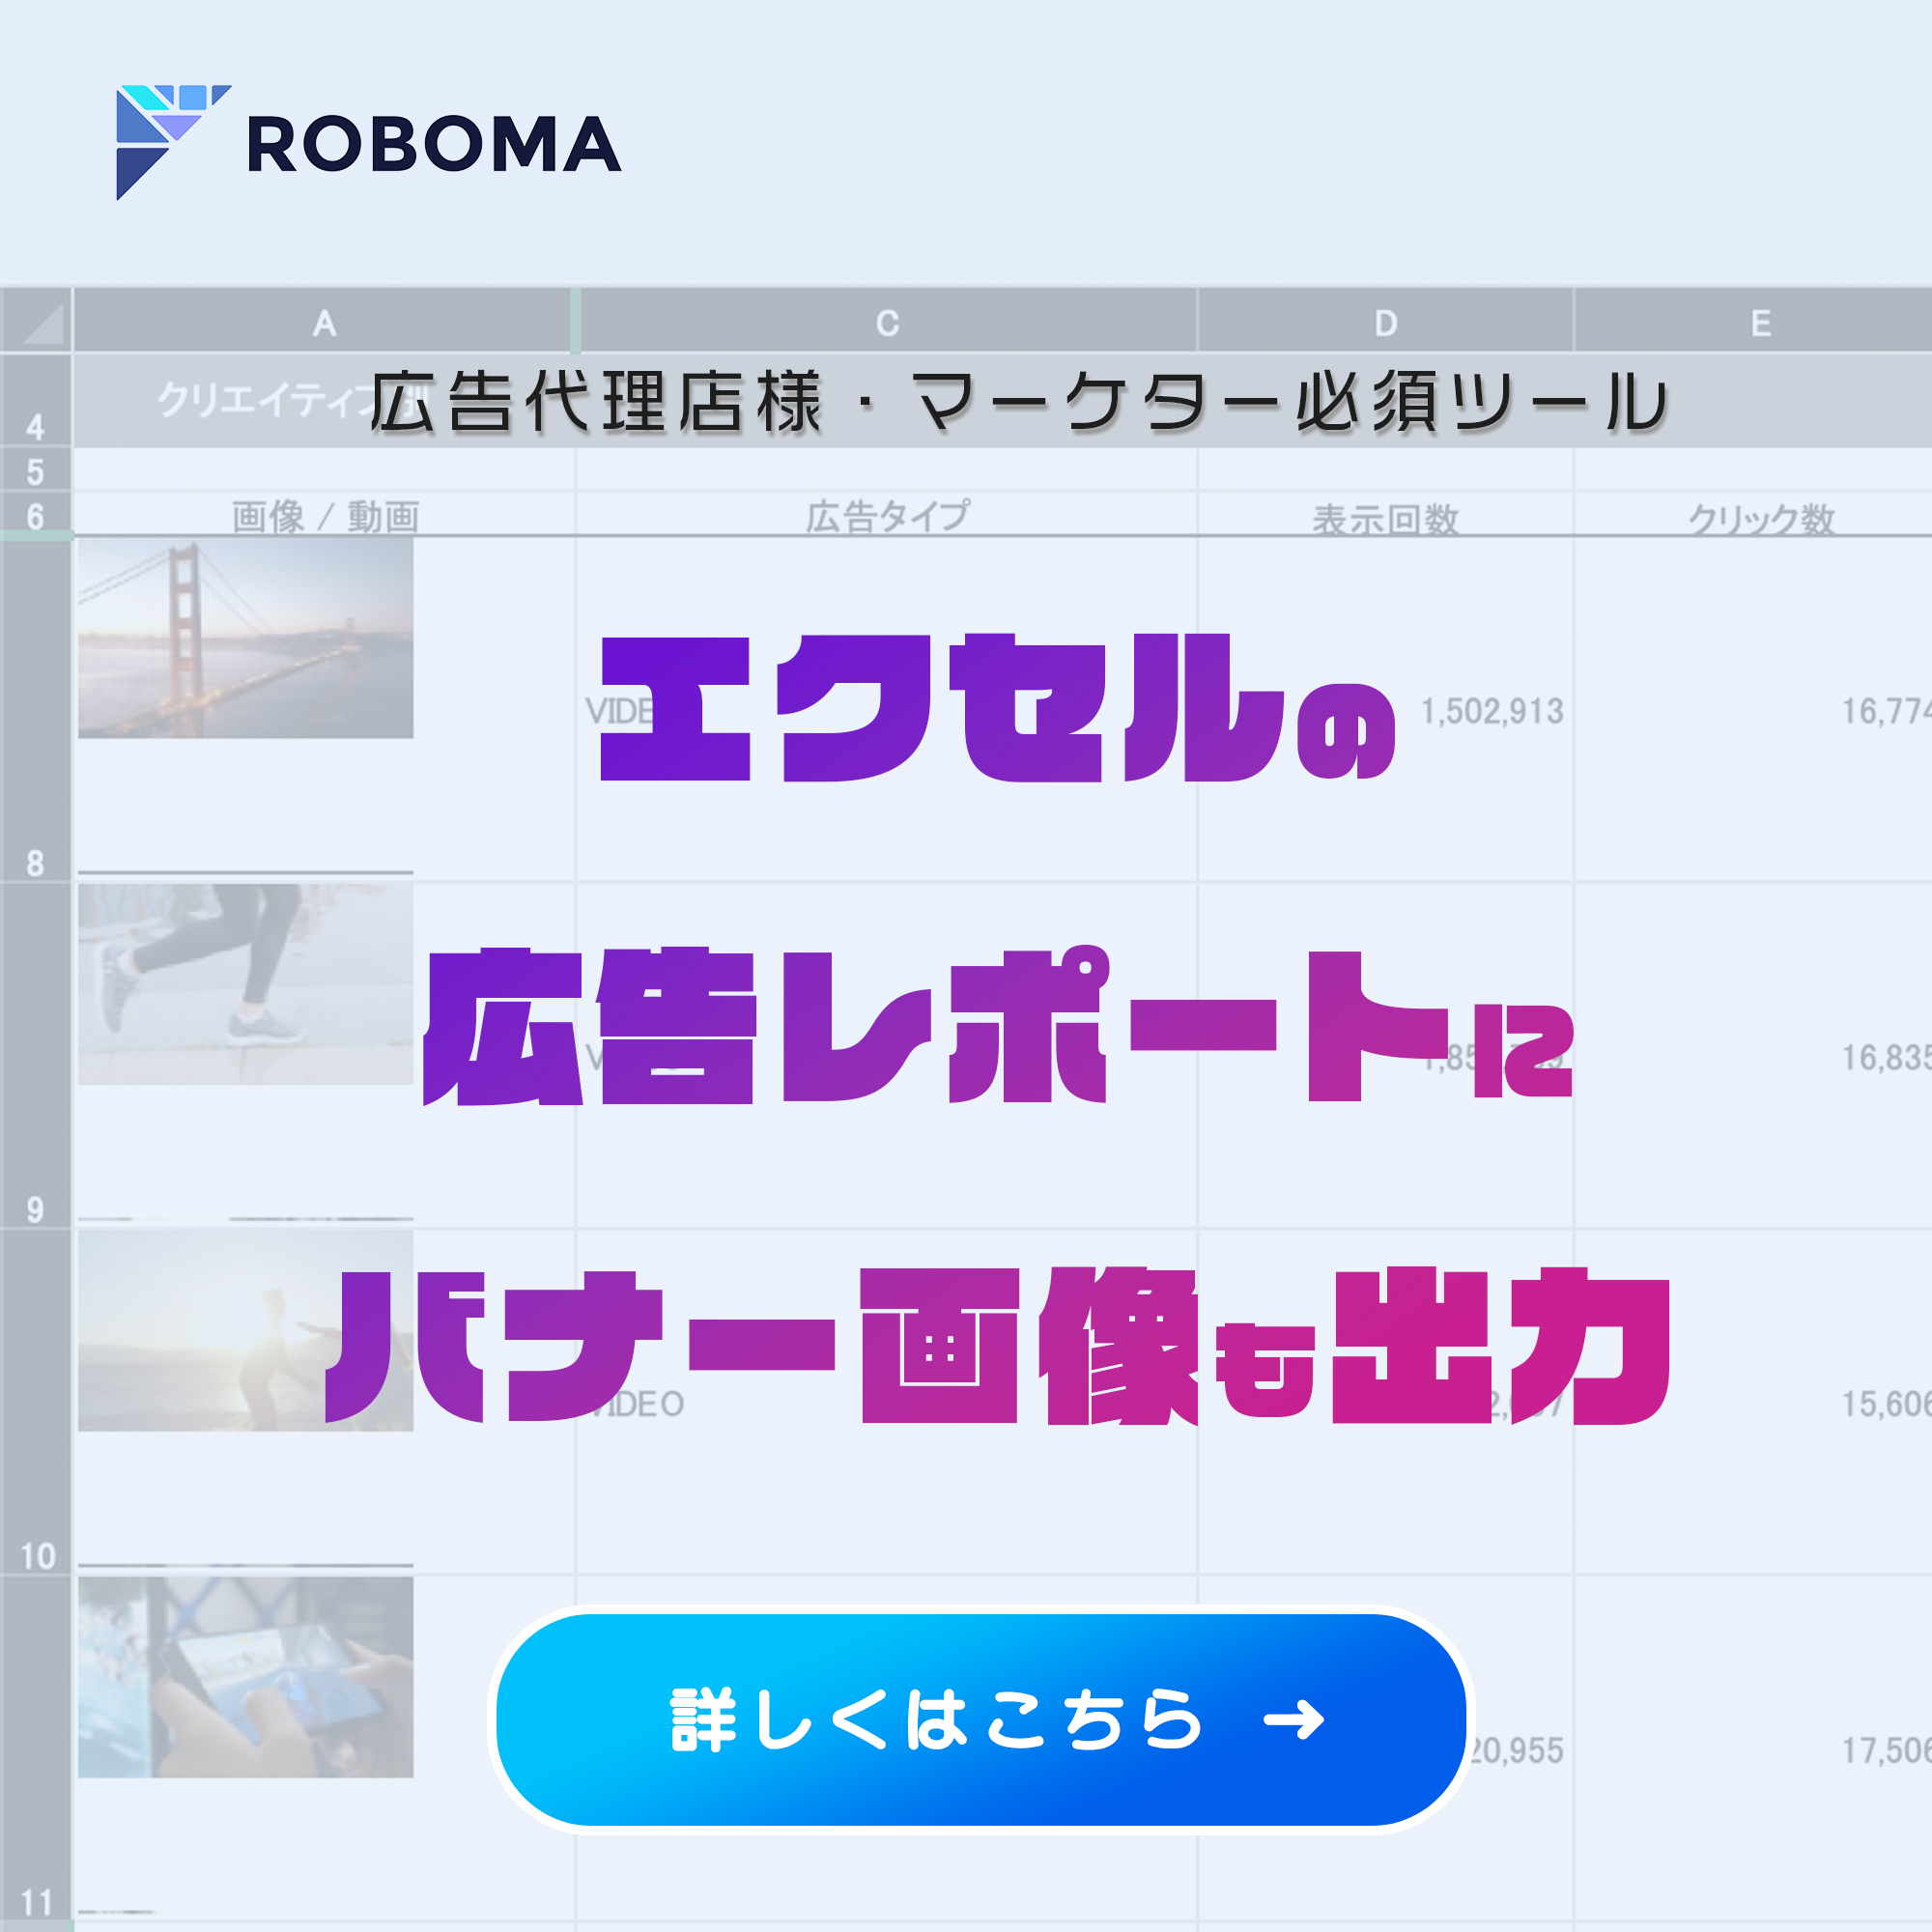 広告レポート作成自動化「ROBOMA (ロボマ)」